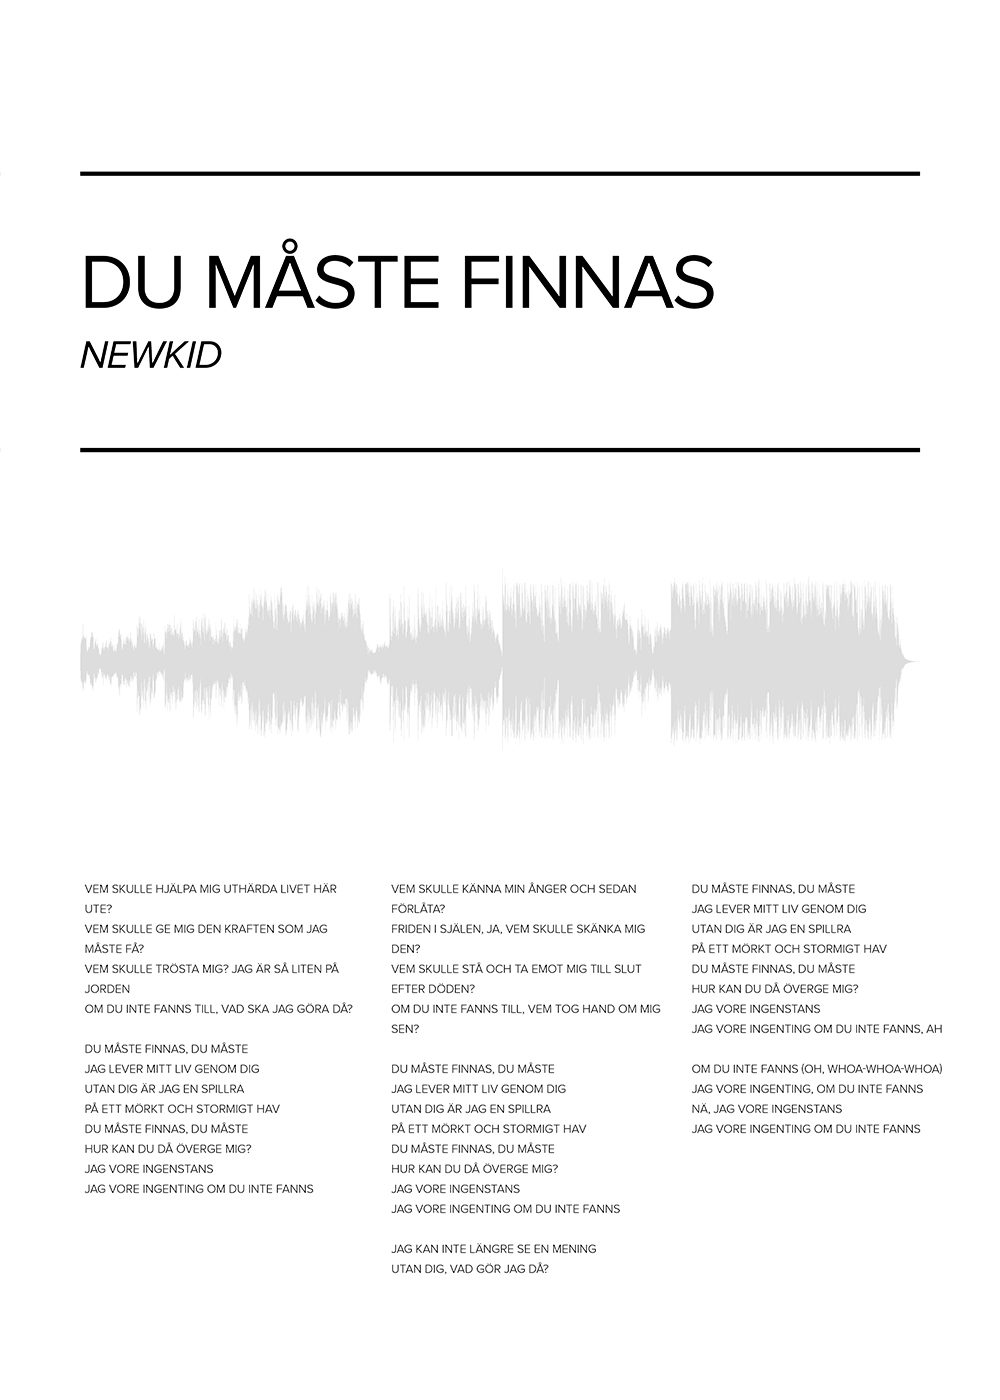 Newkid - Du maste finnas poster